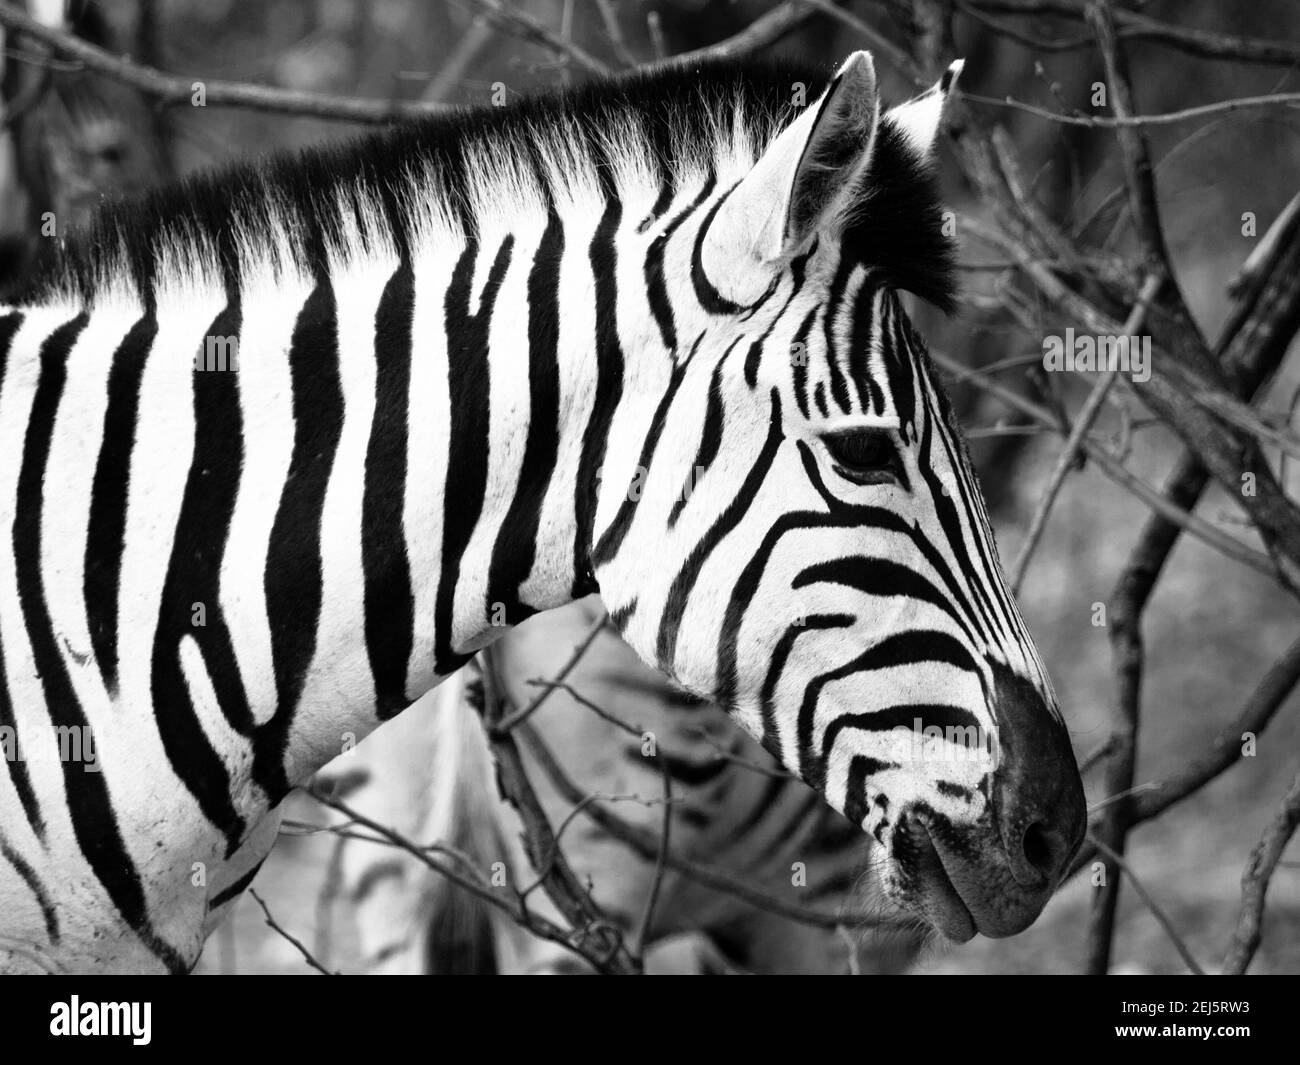 Prifile close-up shot of wild zebra in black and white, Etosha National Park, Namibia, Africa Stock Photo